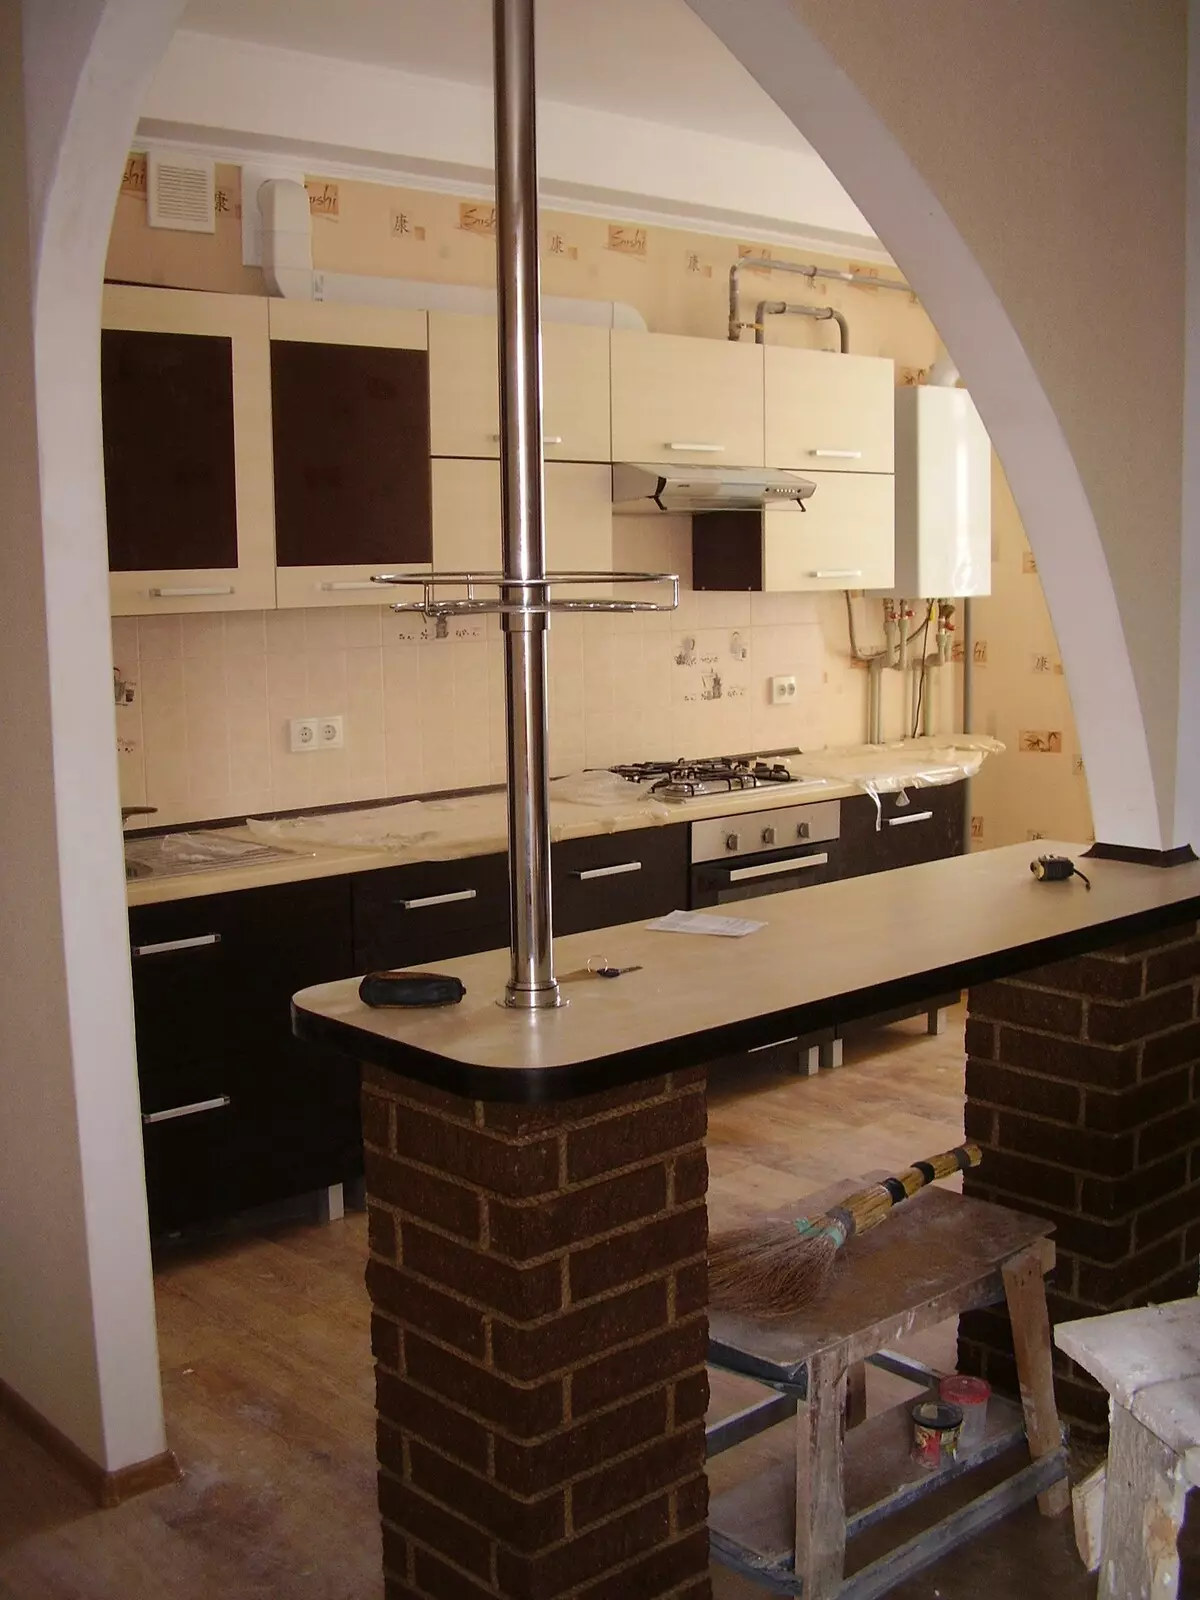 Virtuvės įėjimo salė (62 nuotraukos): virtuvės išdėstymas kartu su koridoriumi privačiame name ir bute. Interjero dizaino virtuvės salės viename stiliuje 9487_62